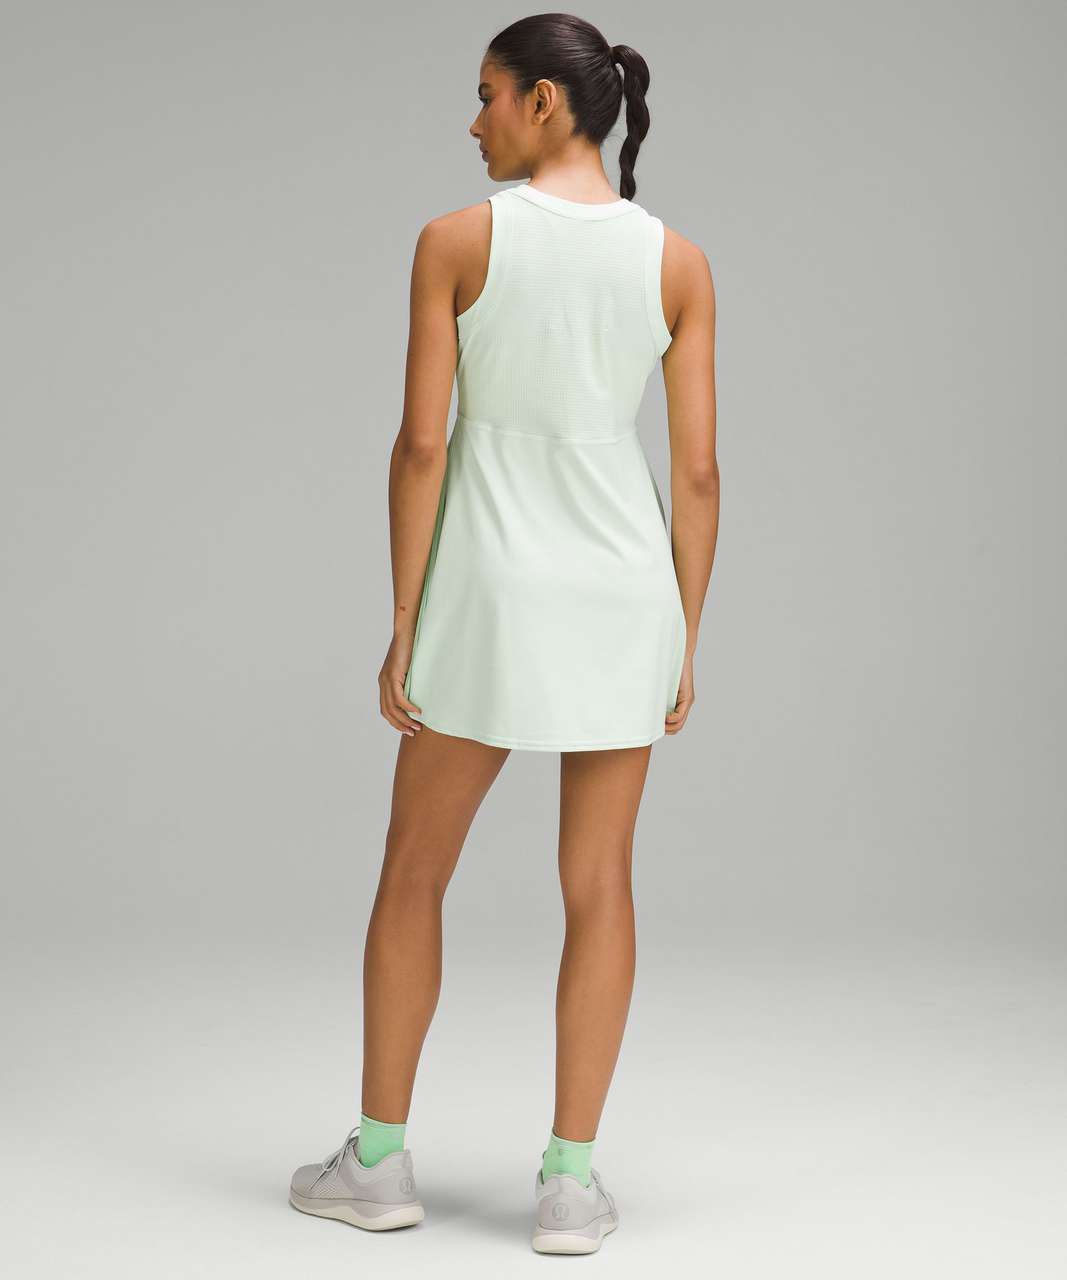 Lululemon Everlux Short-Lined Tennis Tank Top Dress 6 - Maldives Green -  lulu fanatics